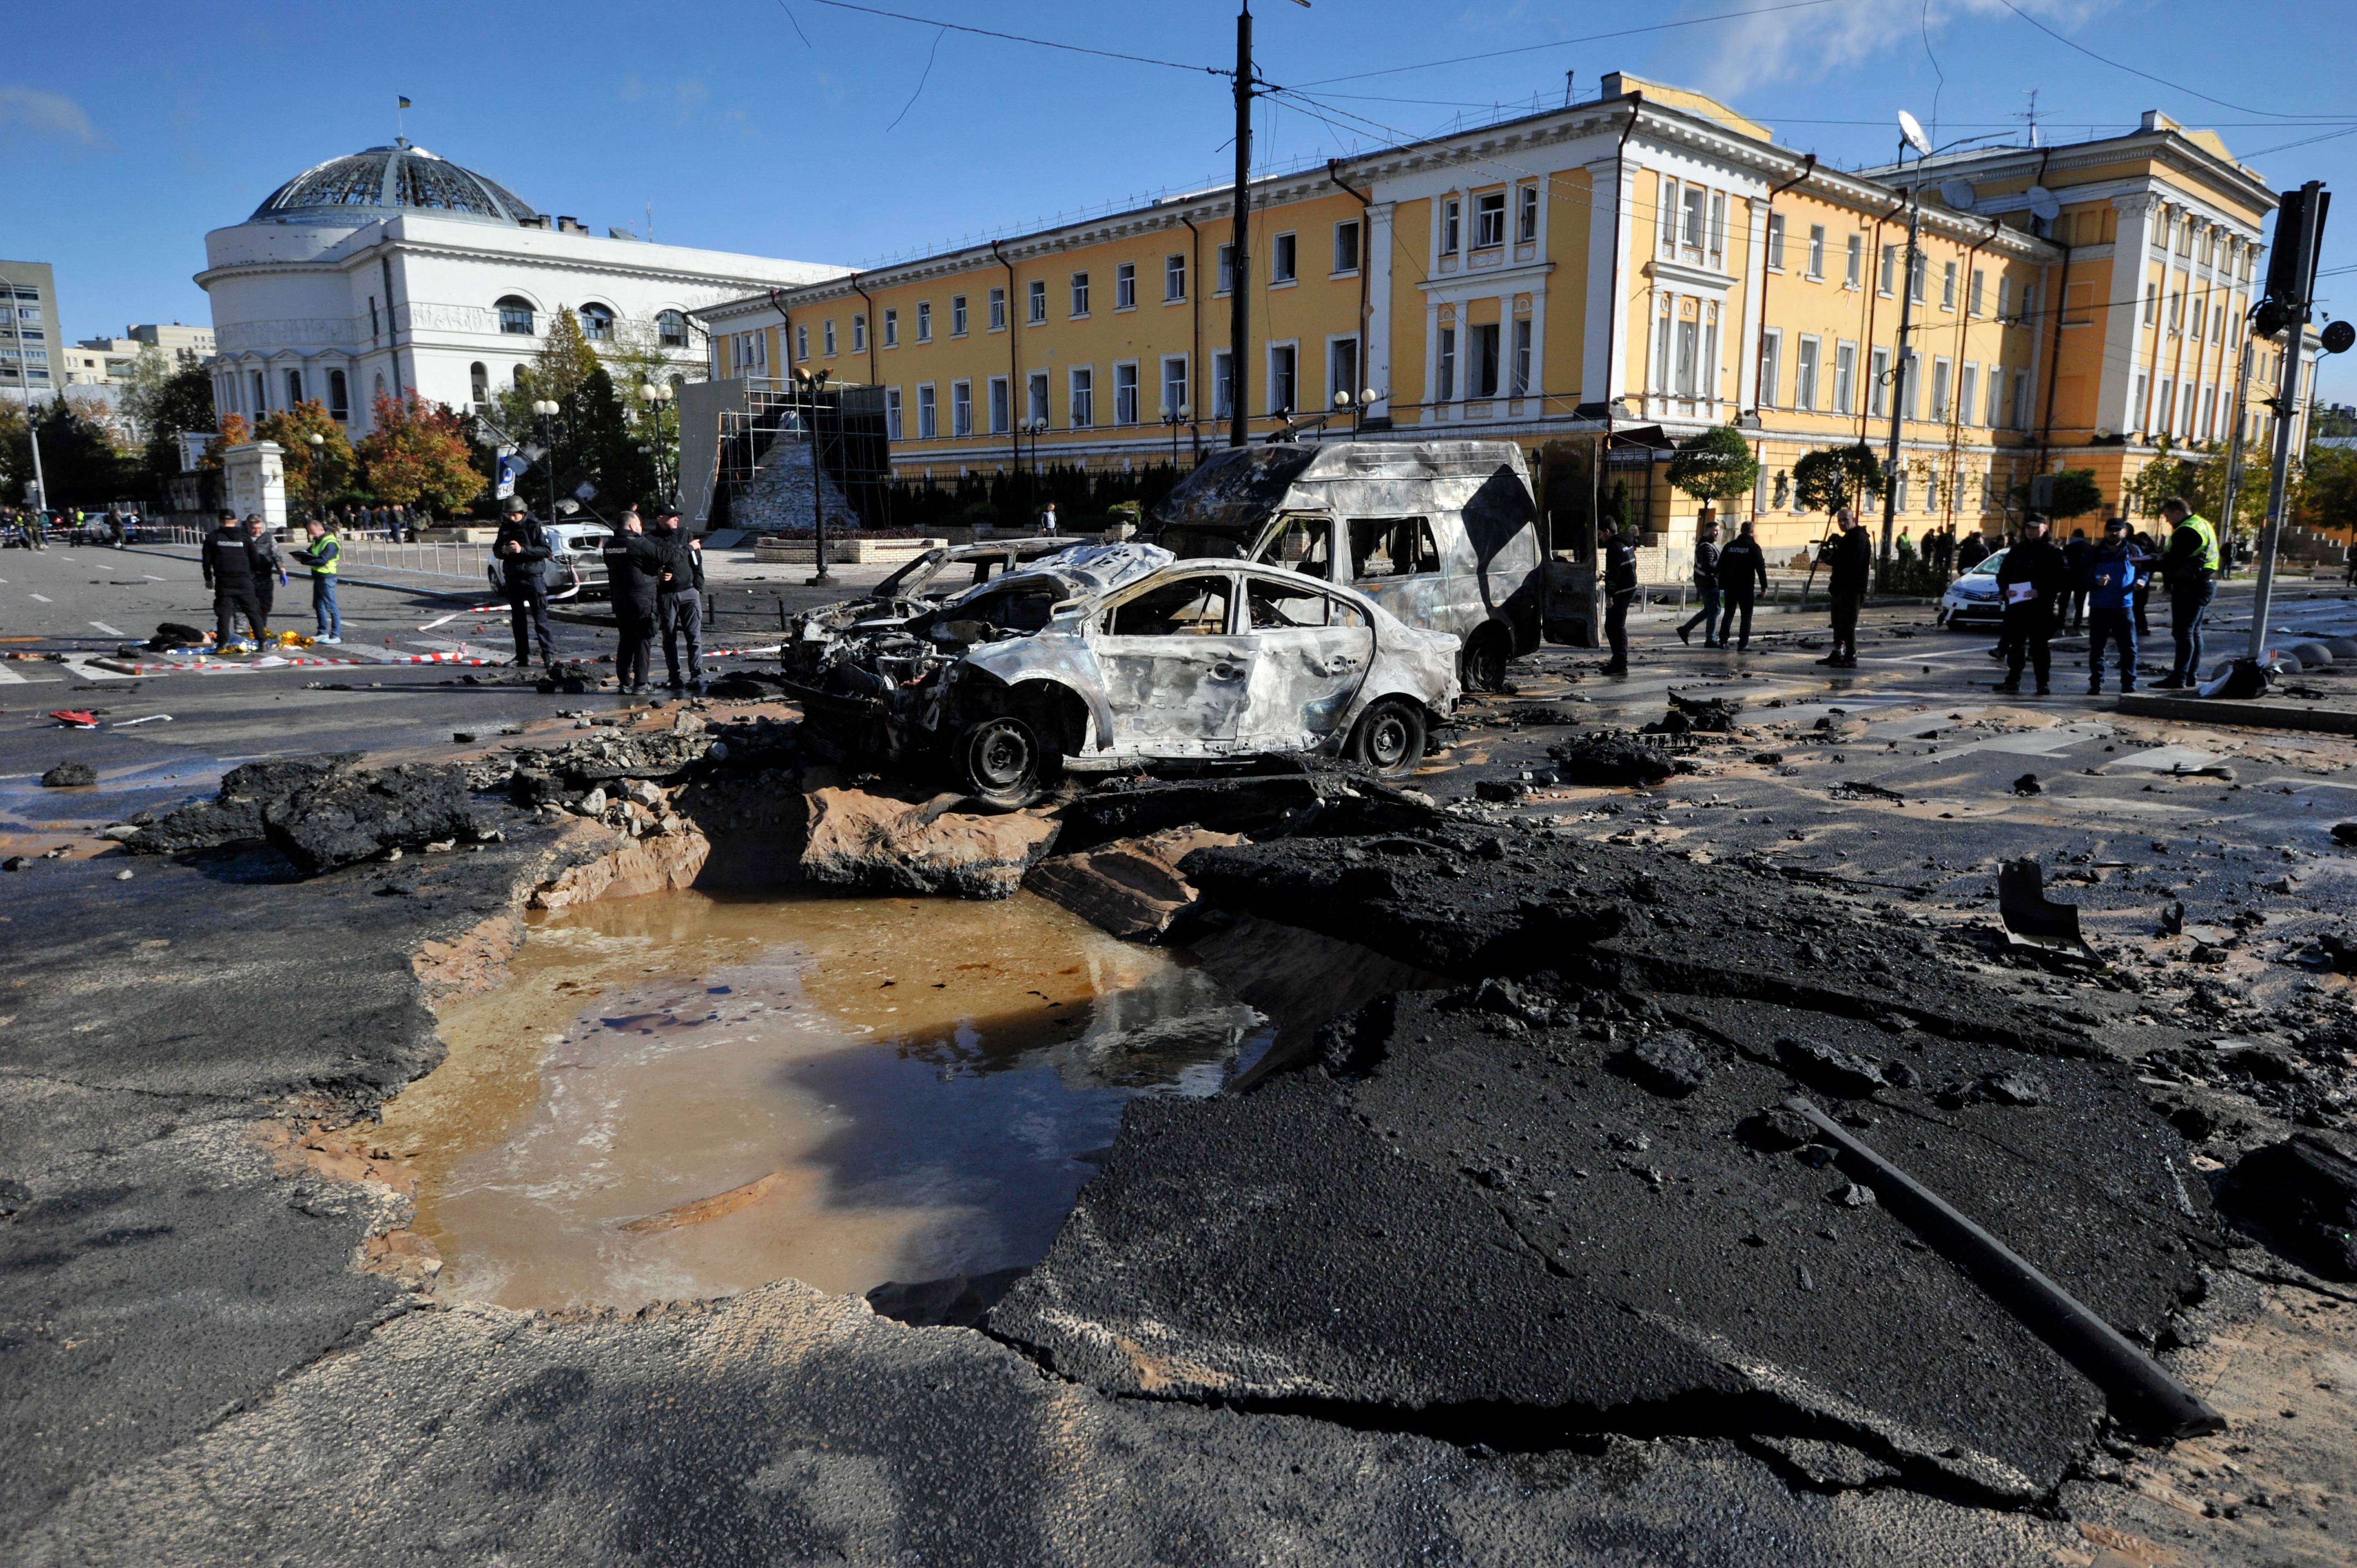 10 октября 2010. Разбитые города Украины. Мир после войны. Киев сейчас. Разбитые дороги Украины 2022.